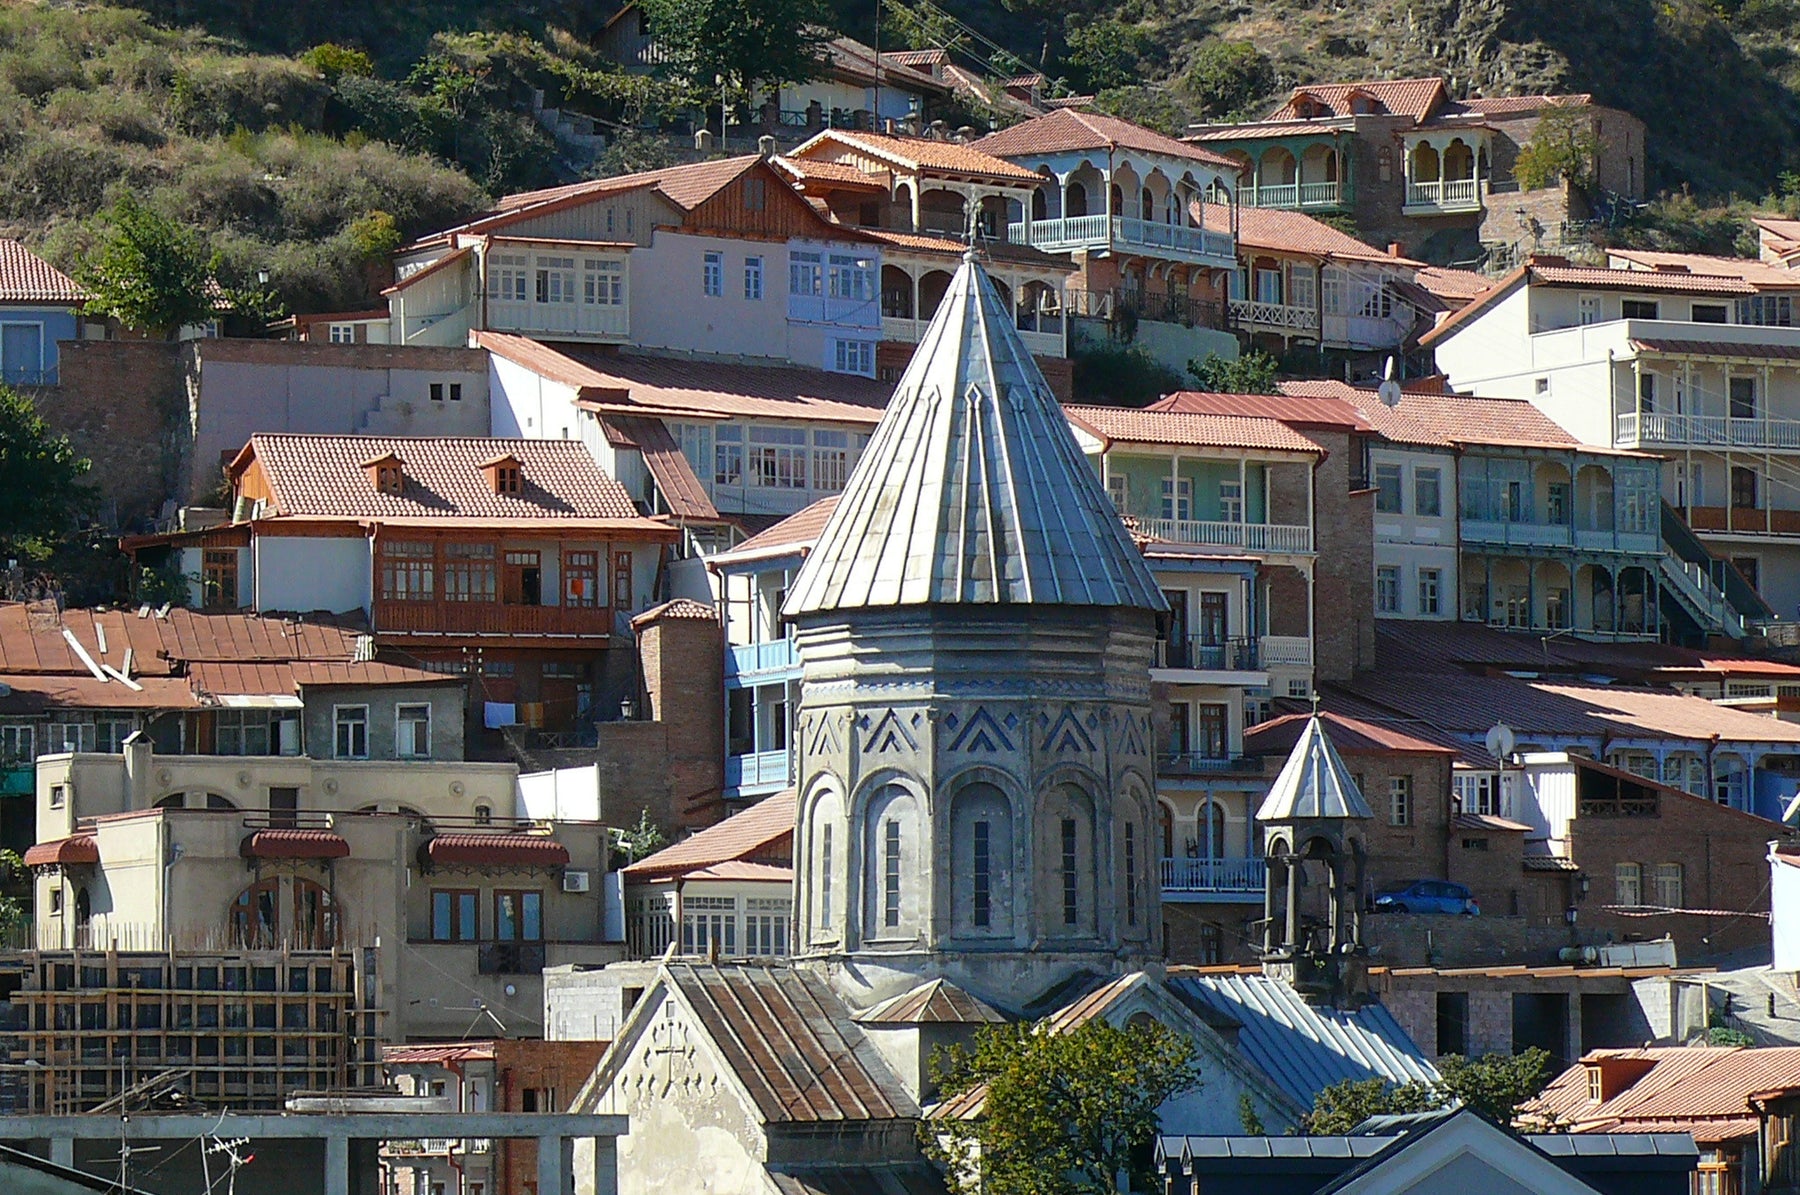 Weekend Break: Tbilisi - Crown Jewel of the Caucasus